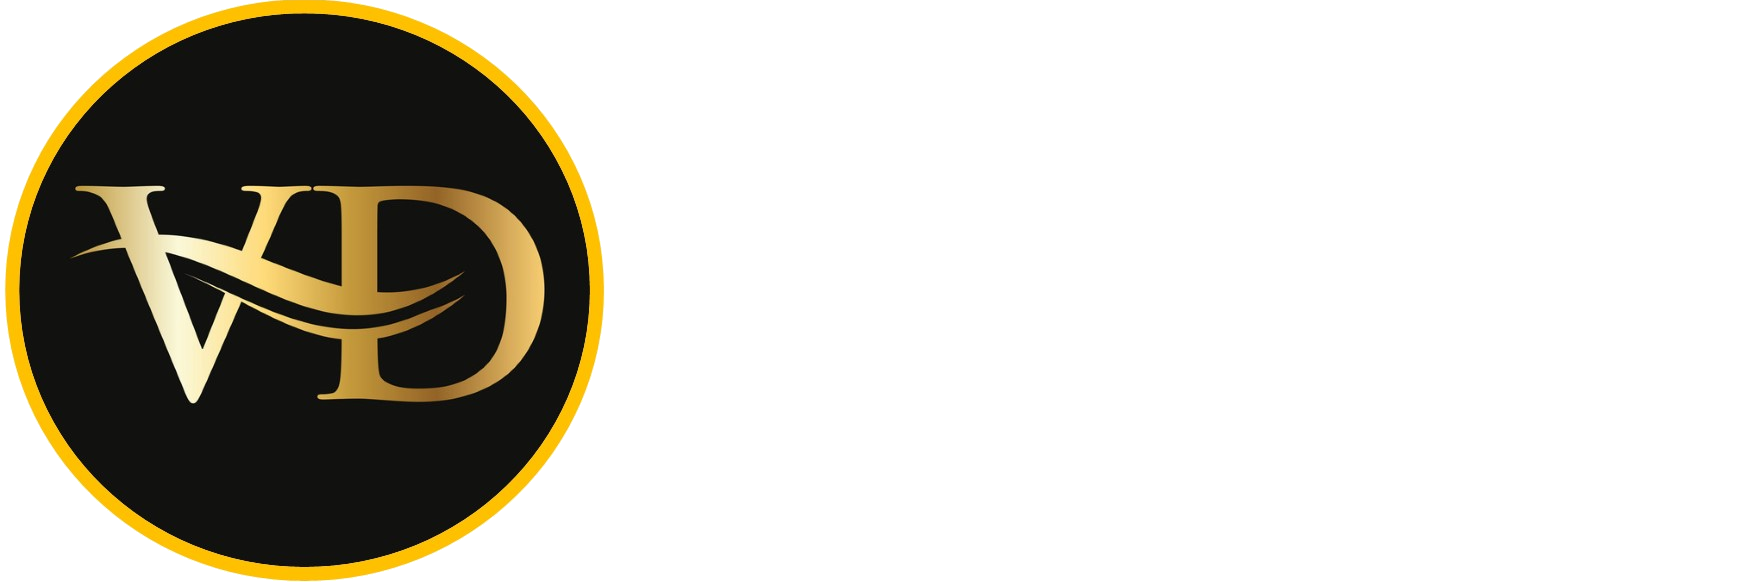 Vox Dei Institute